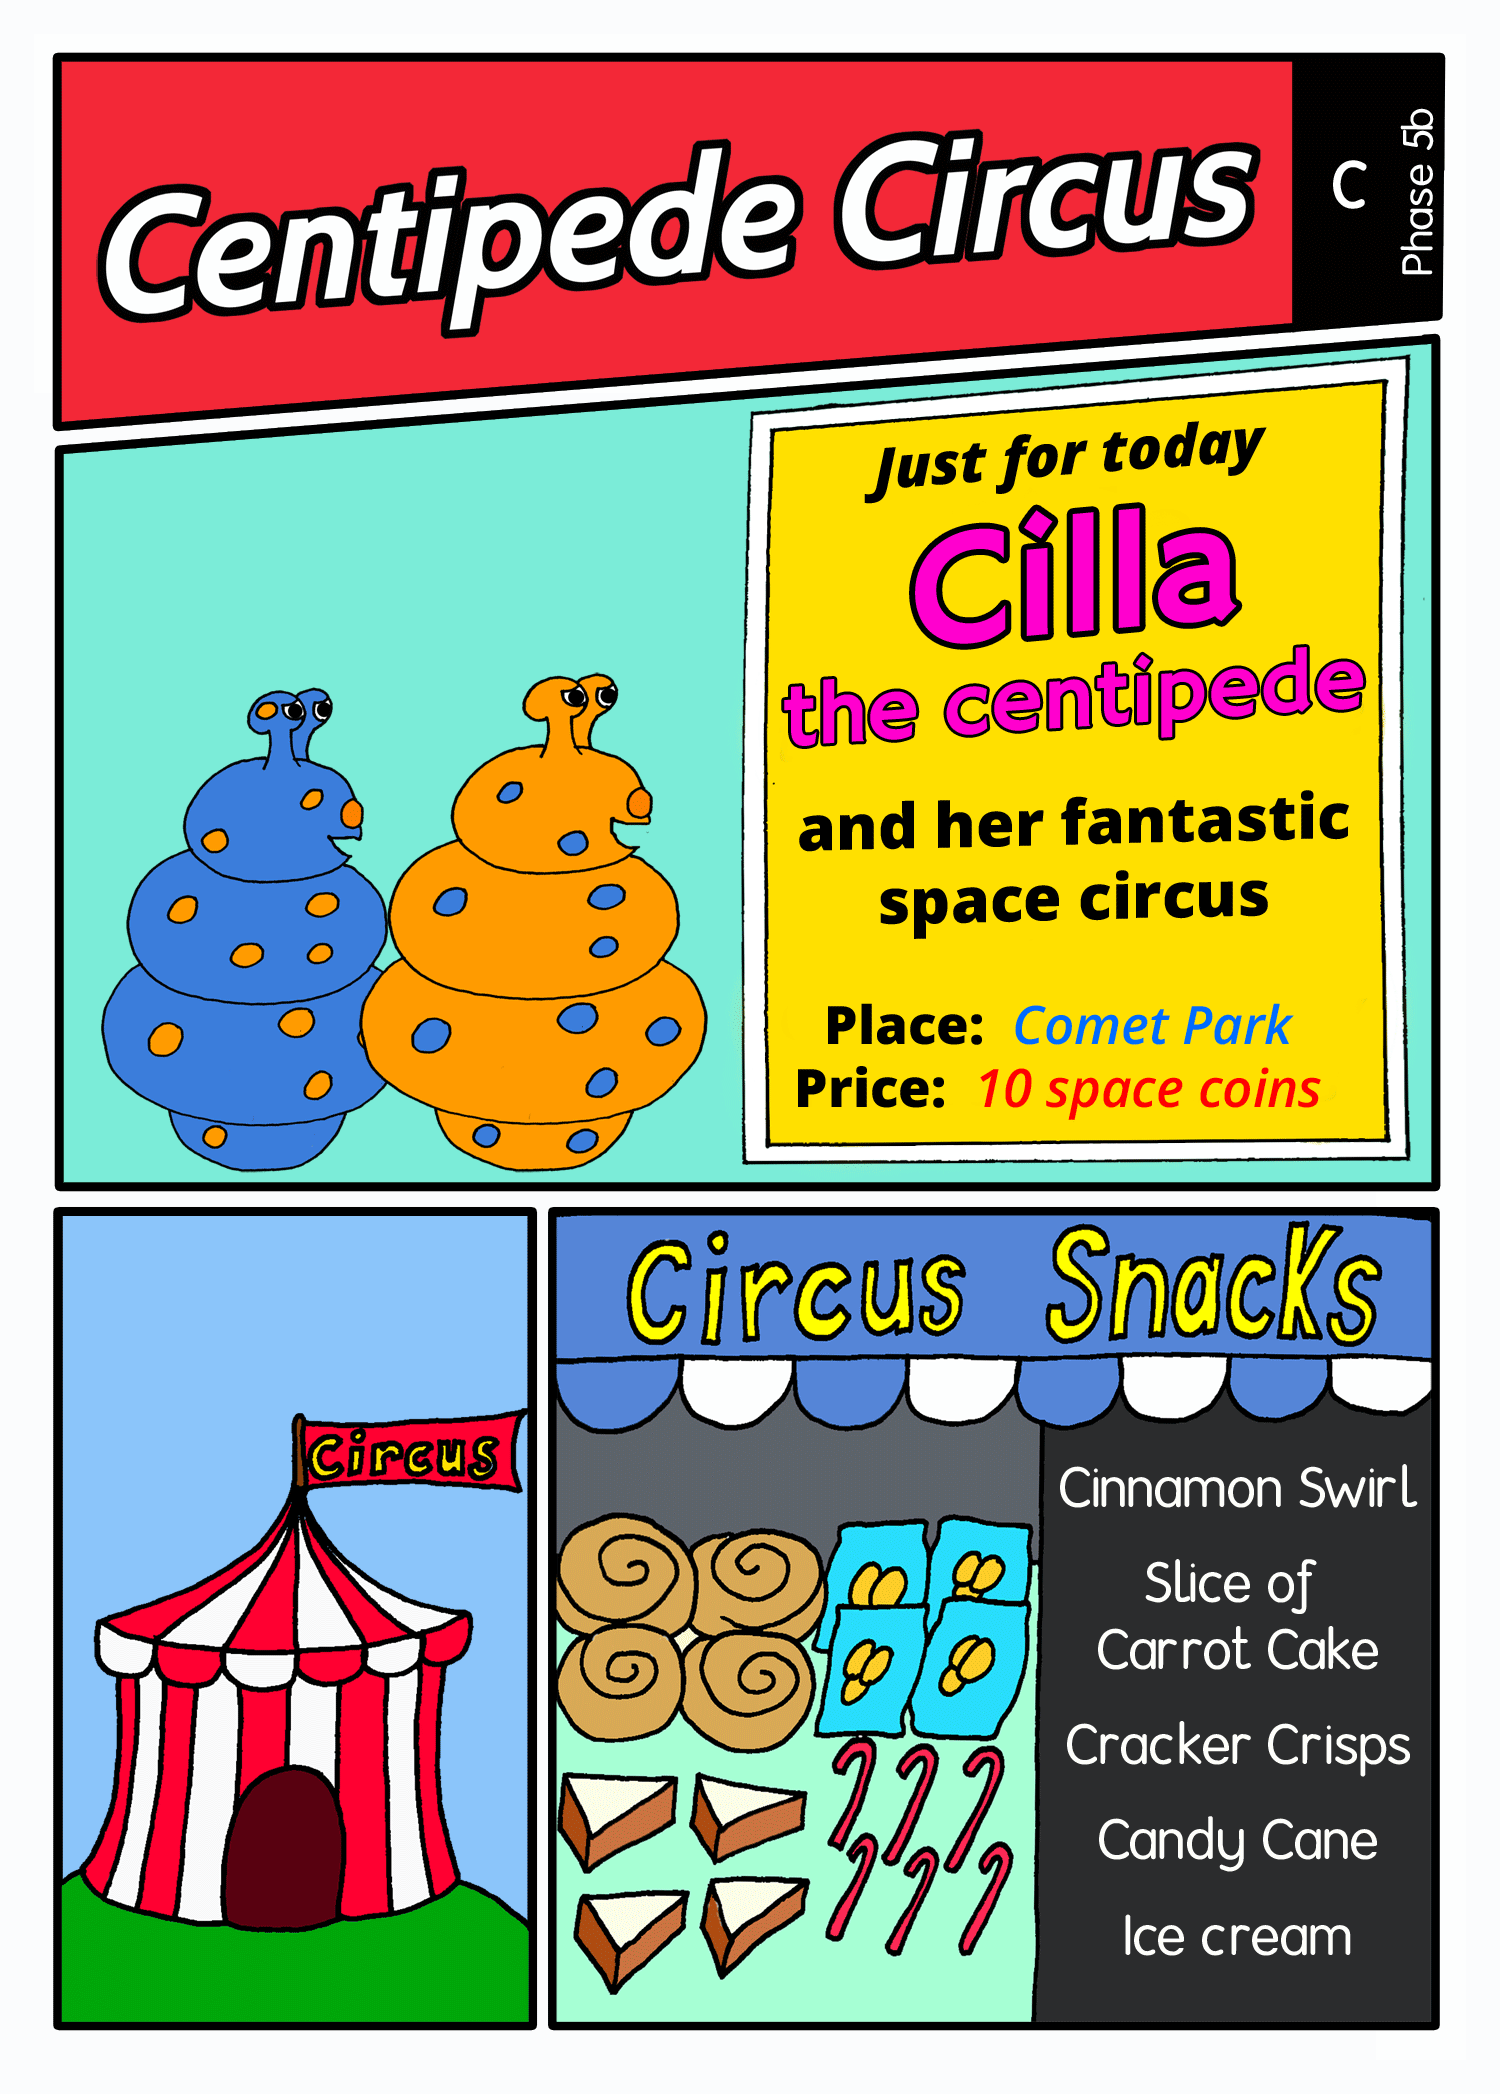 Centipede circus panel1